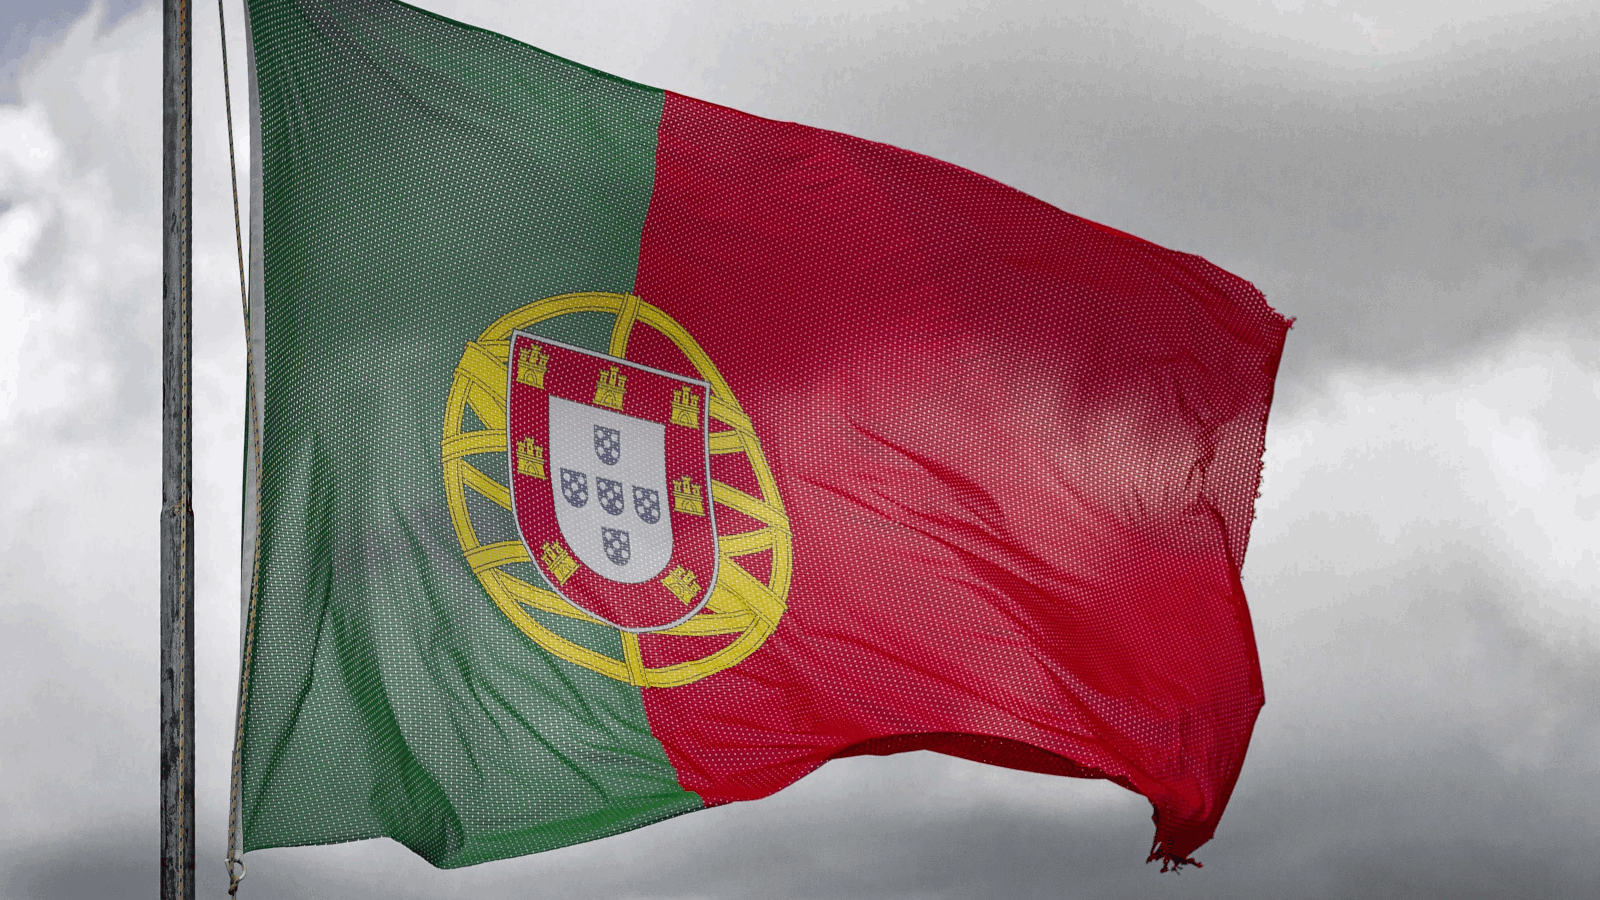 Documentos secretos da NATO roubados de Portugal e agora vendidos na dark web